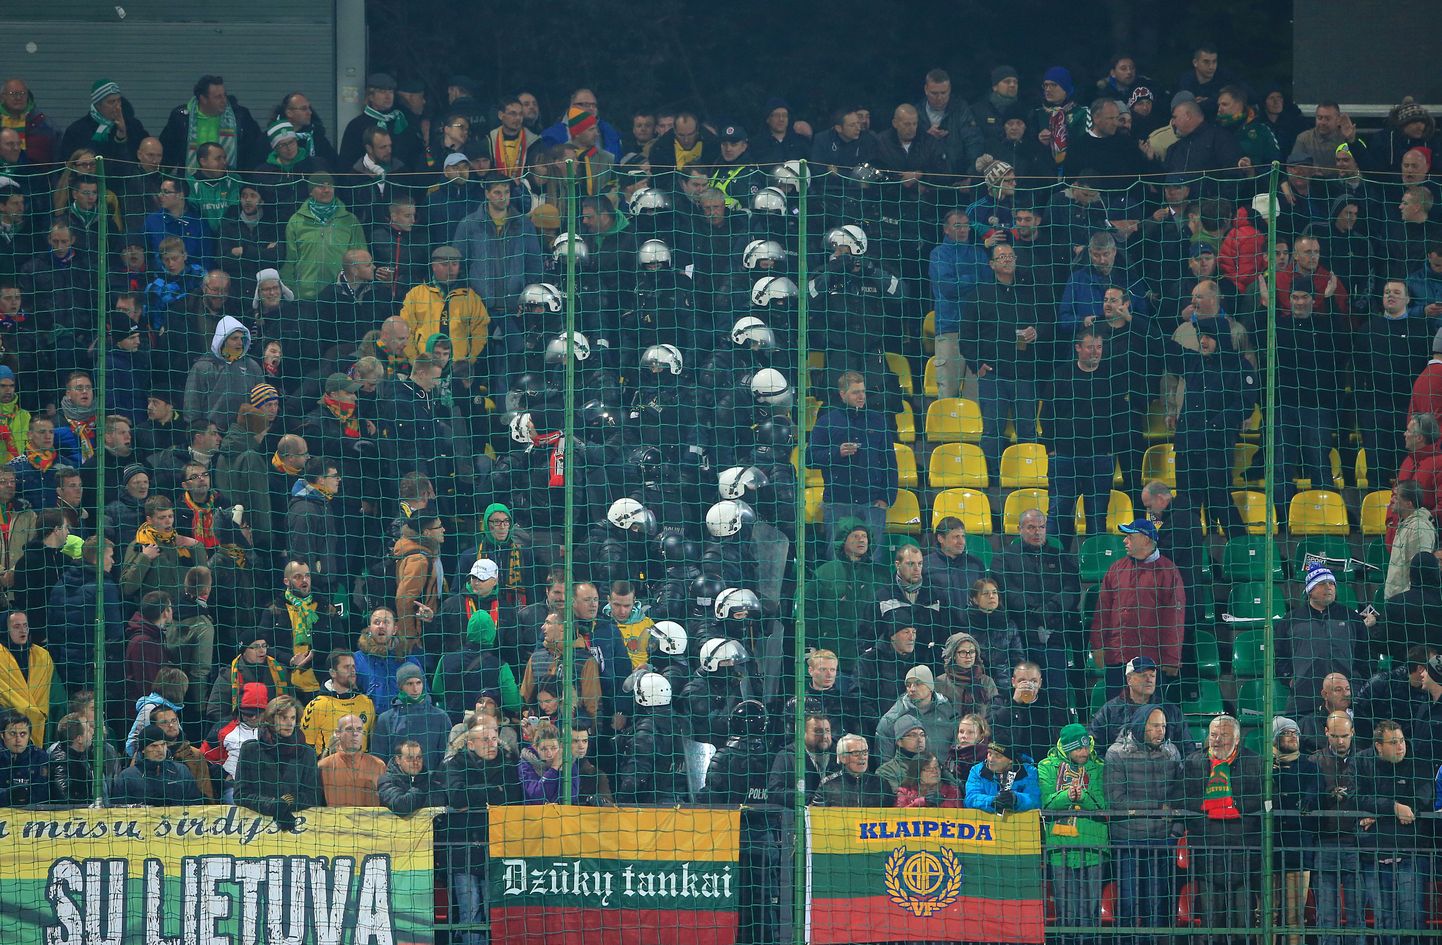 Leedu jalgpallifännid